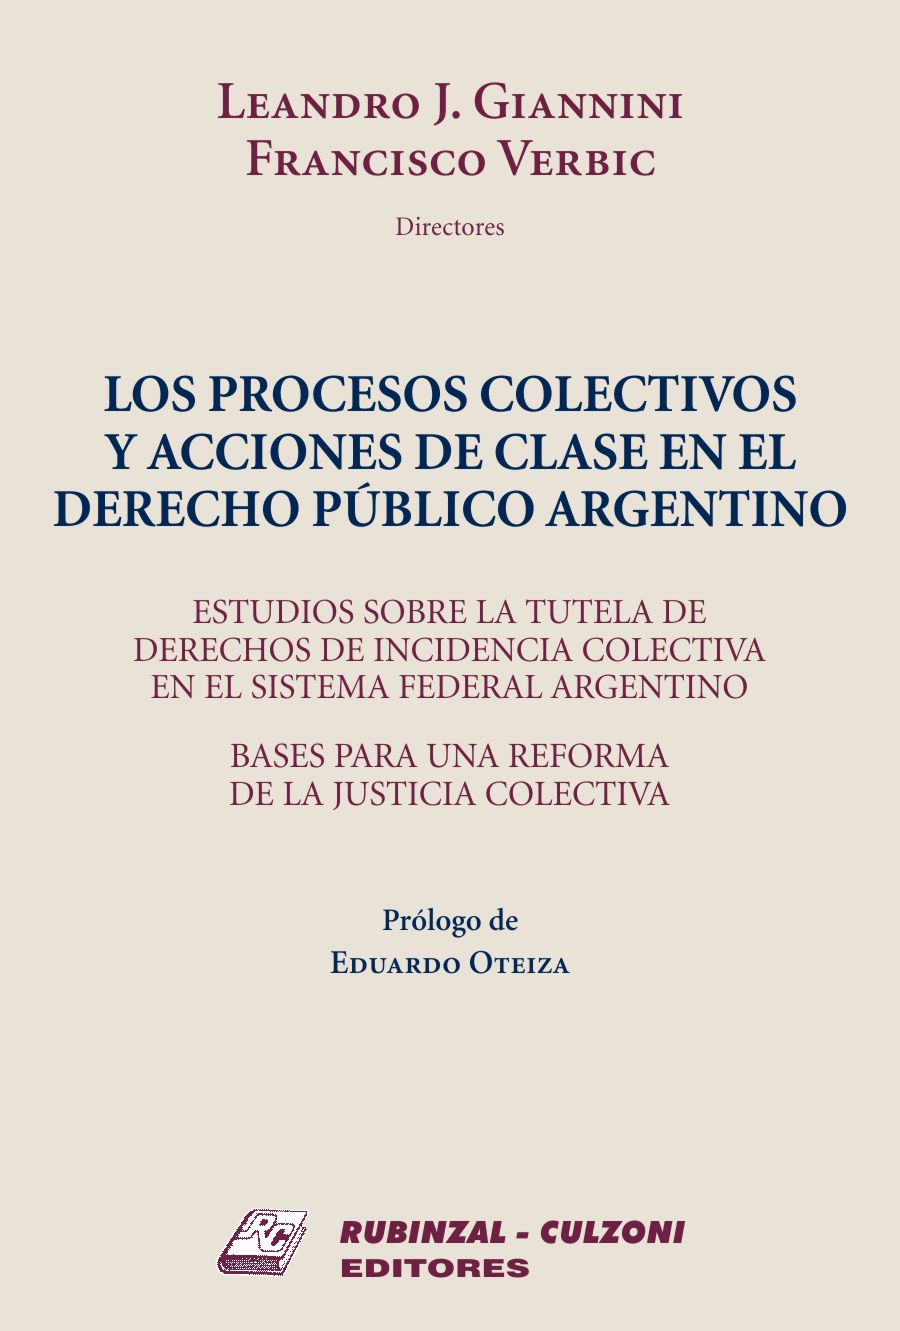 Los Procesos Colectivos y Acciones de Clase en el Derecho Público Argentino